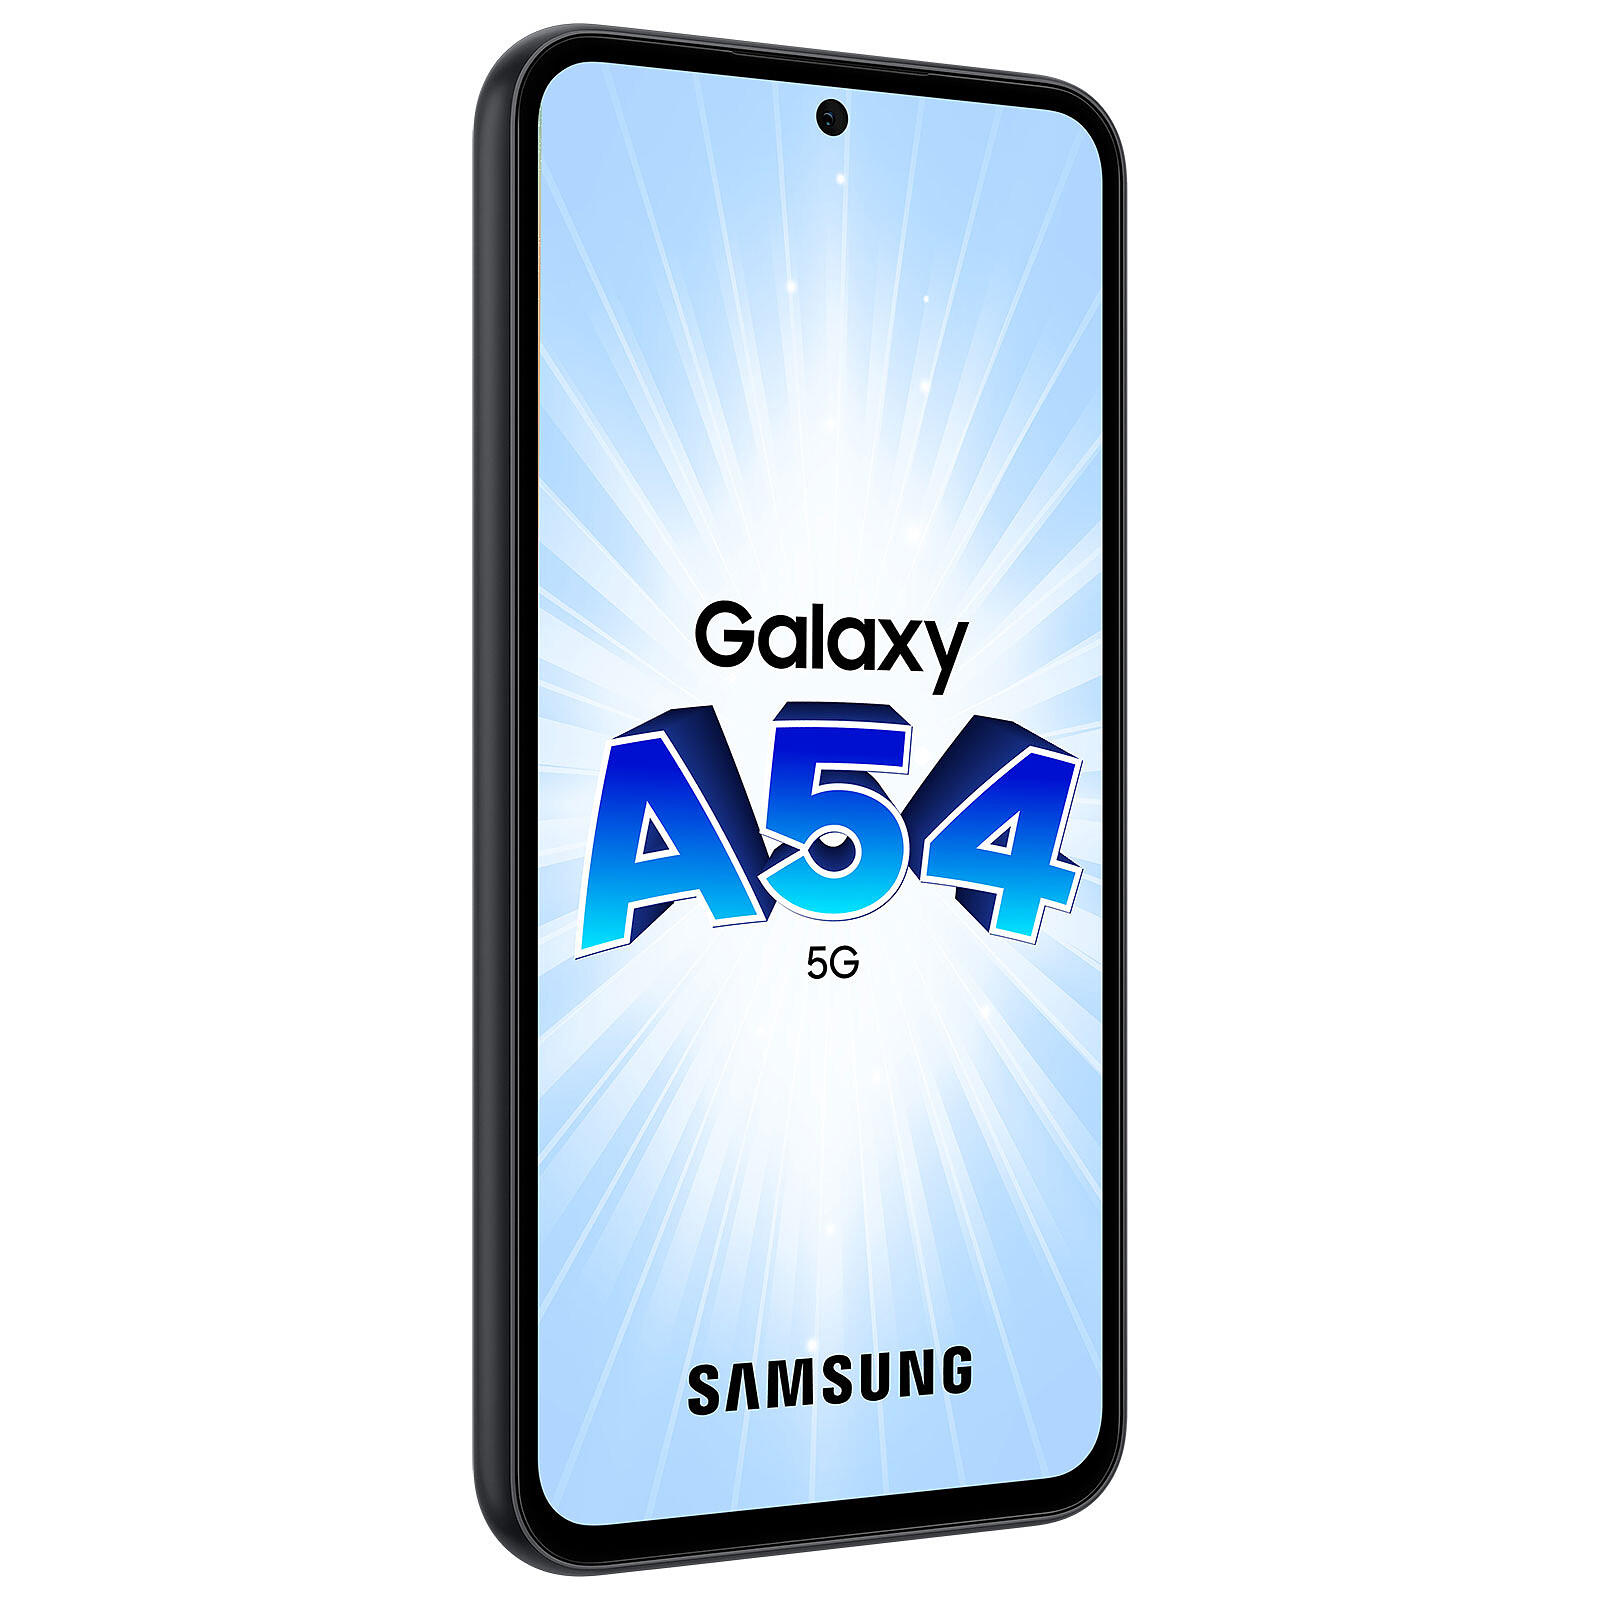 Samsung Galaxy A25 5G Bleu (6 Go / 128 Go) - Mobile & smartphone - Garantie  3 ans LDLC